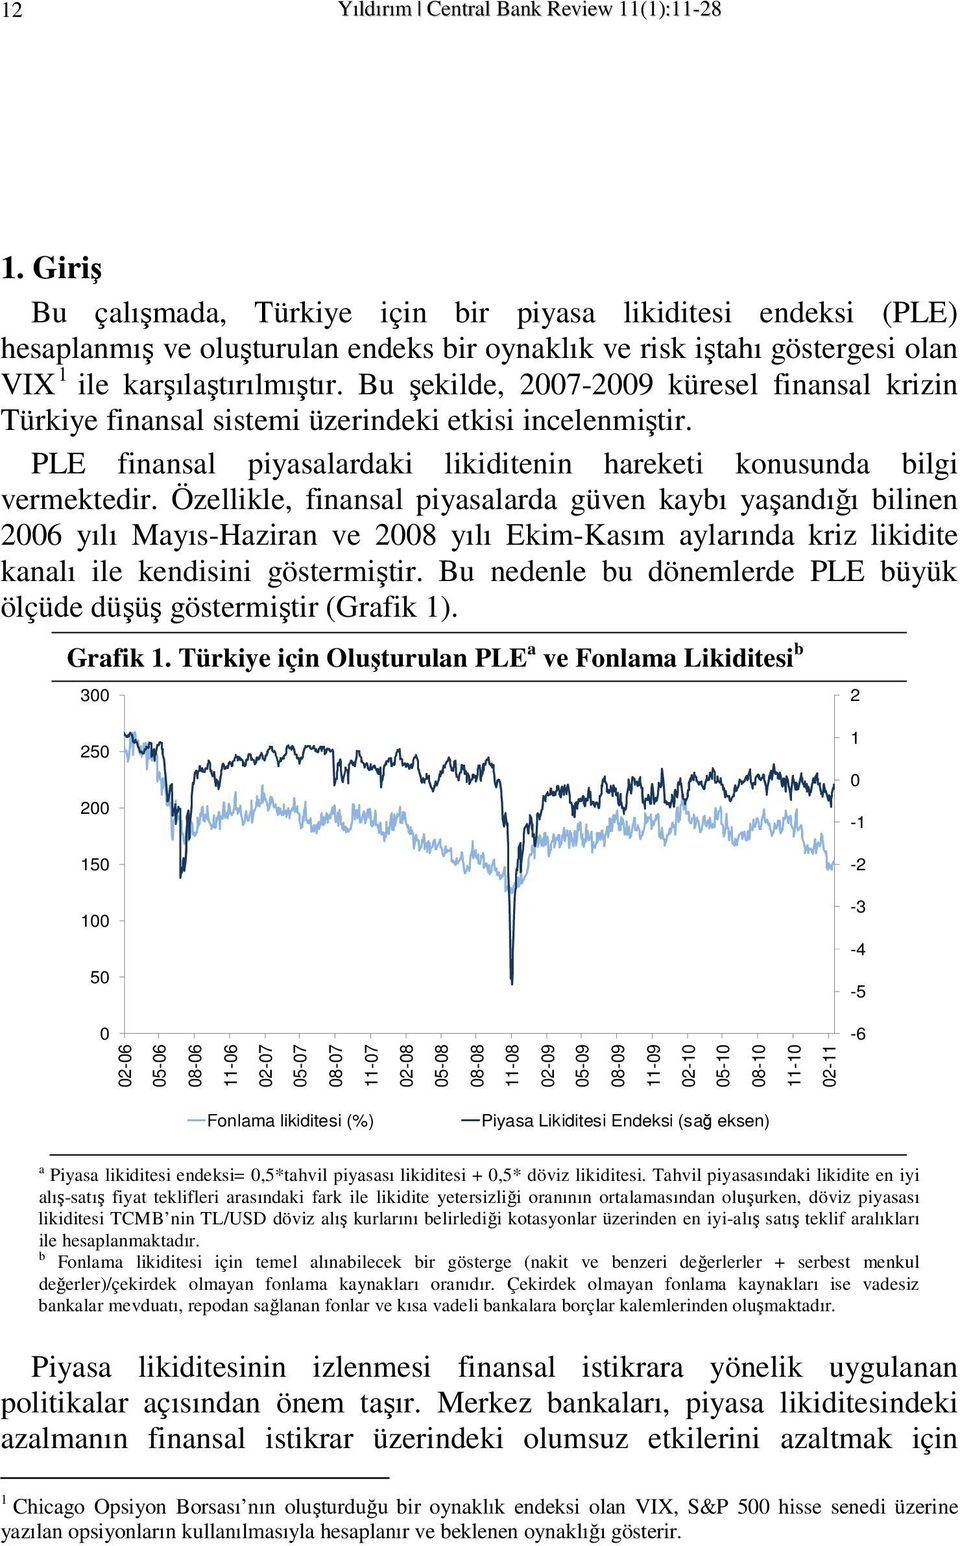 Bu şekilde, 2007-2009 küresel finansal krizin Türkiye finansal sisemi üzerindeki ekisi incelenmişir. PLE finansal piyasalardaki likidienin harekei konusunda bilgi vermekedir.